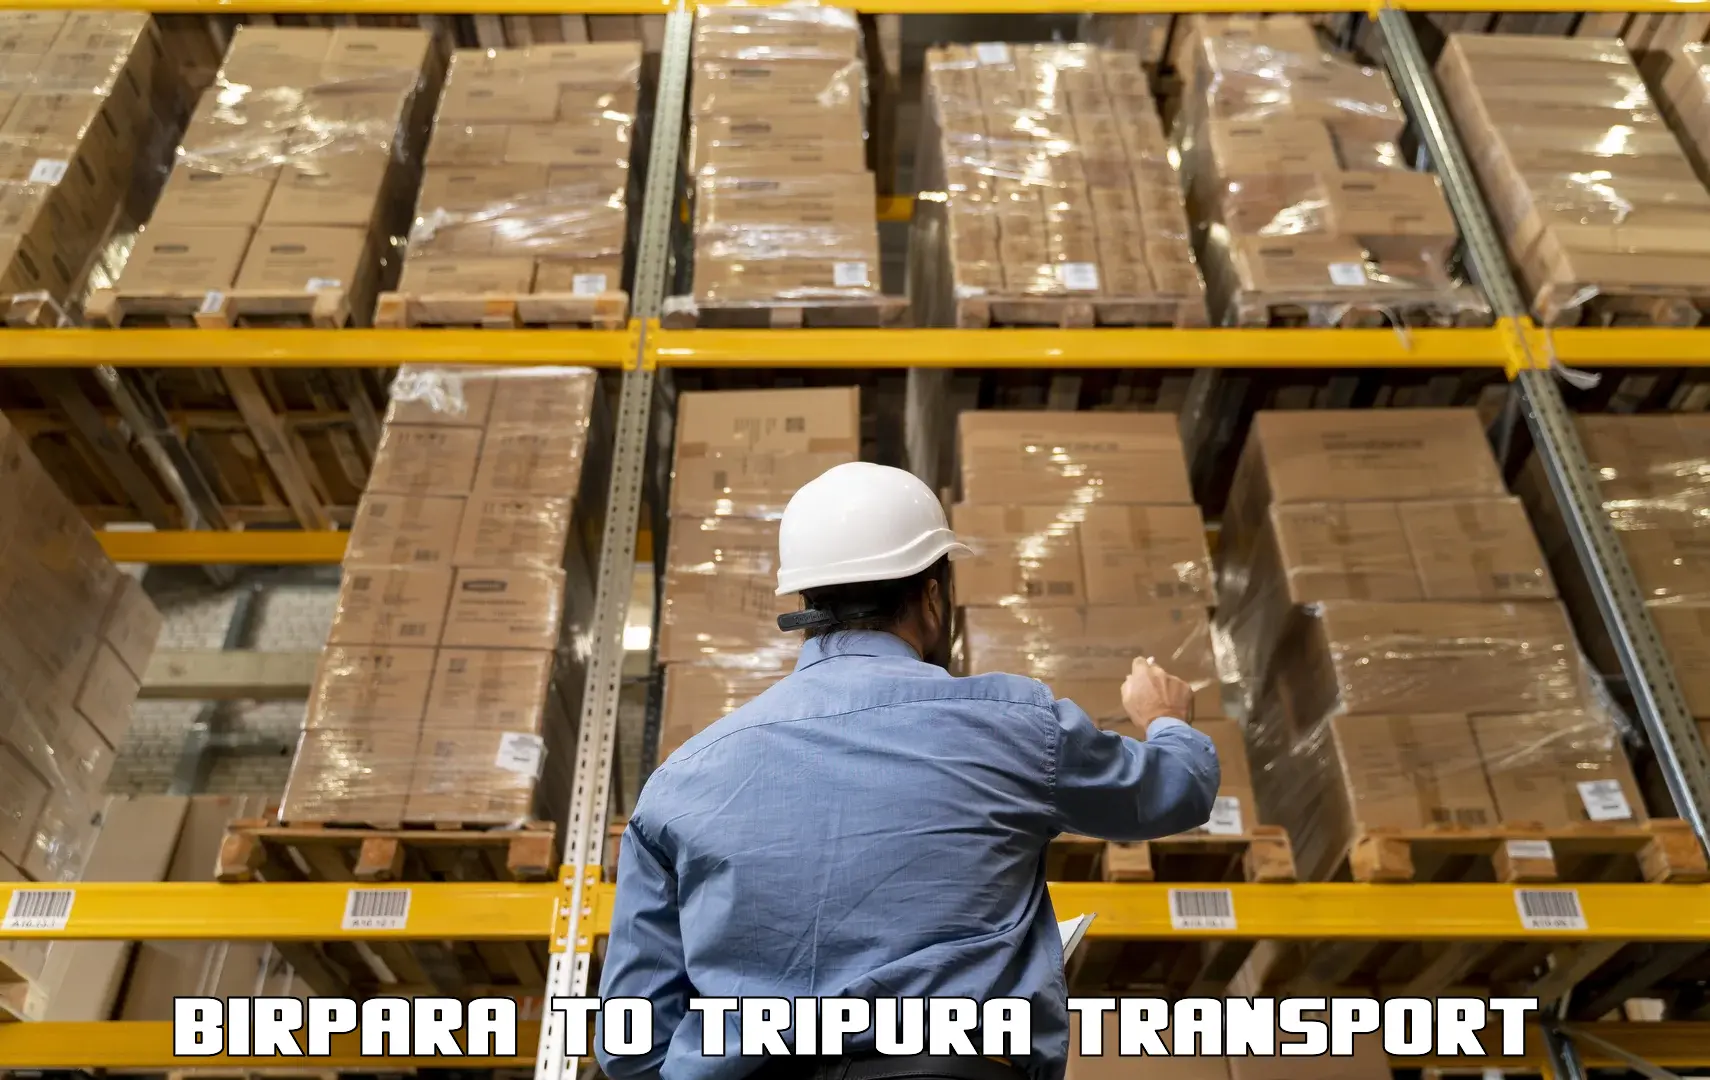 Commercial transport service Birpara to Agartala